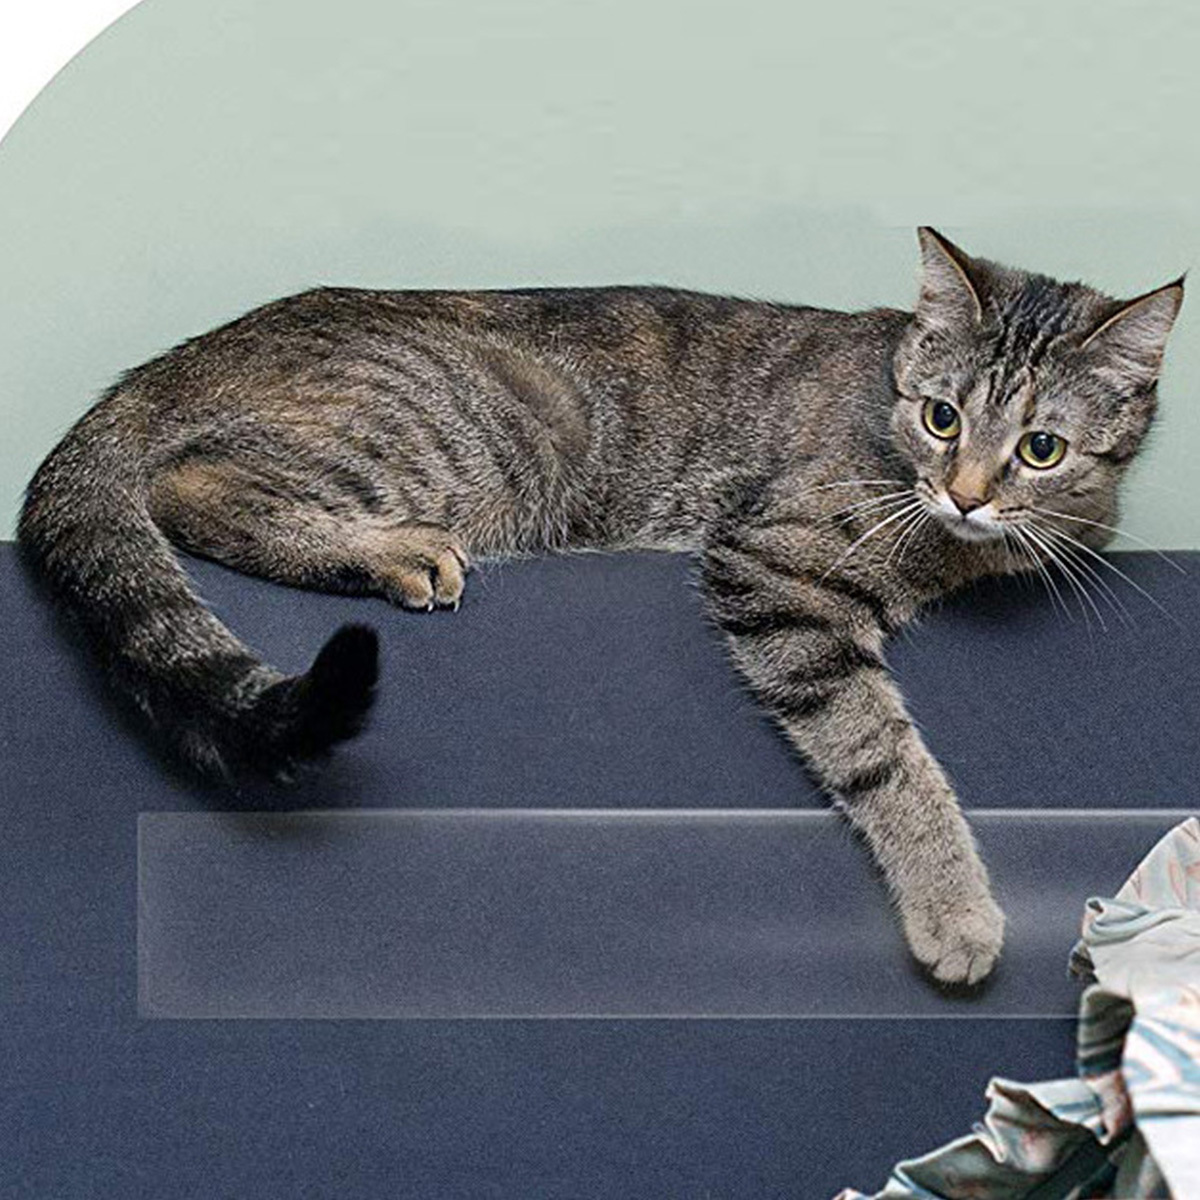 Anti Cat Scratch Furniture Protectors from Cats, Cat Scratch